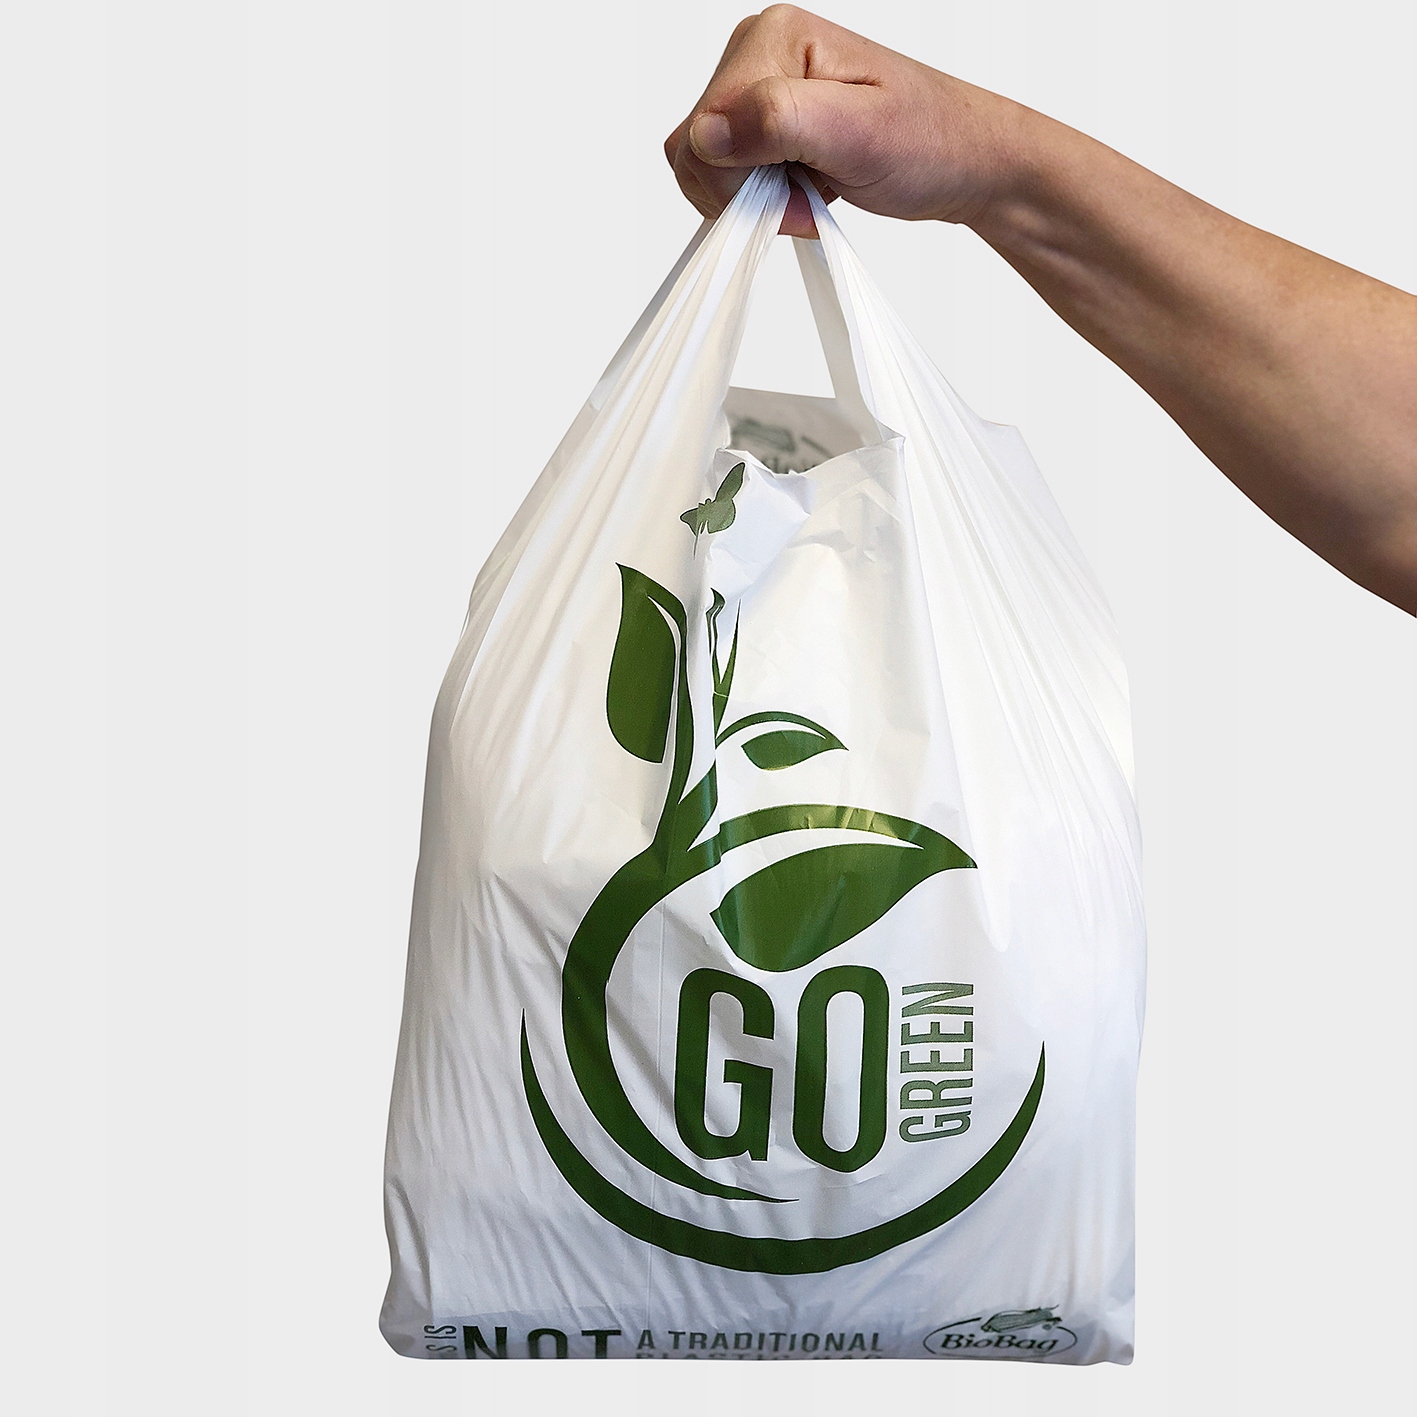 Биоразлагаемые пакеты отзывы. Оксо биоразлагаемые пакеты. Биоразлагаемые пакеты для продуктов. Биоразлагаемые пакеты для упаковки. Биоразлагаемая пластиковая упаковка.